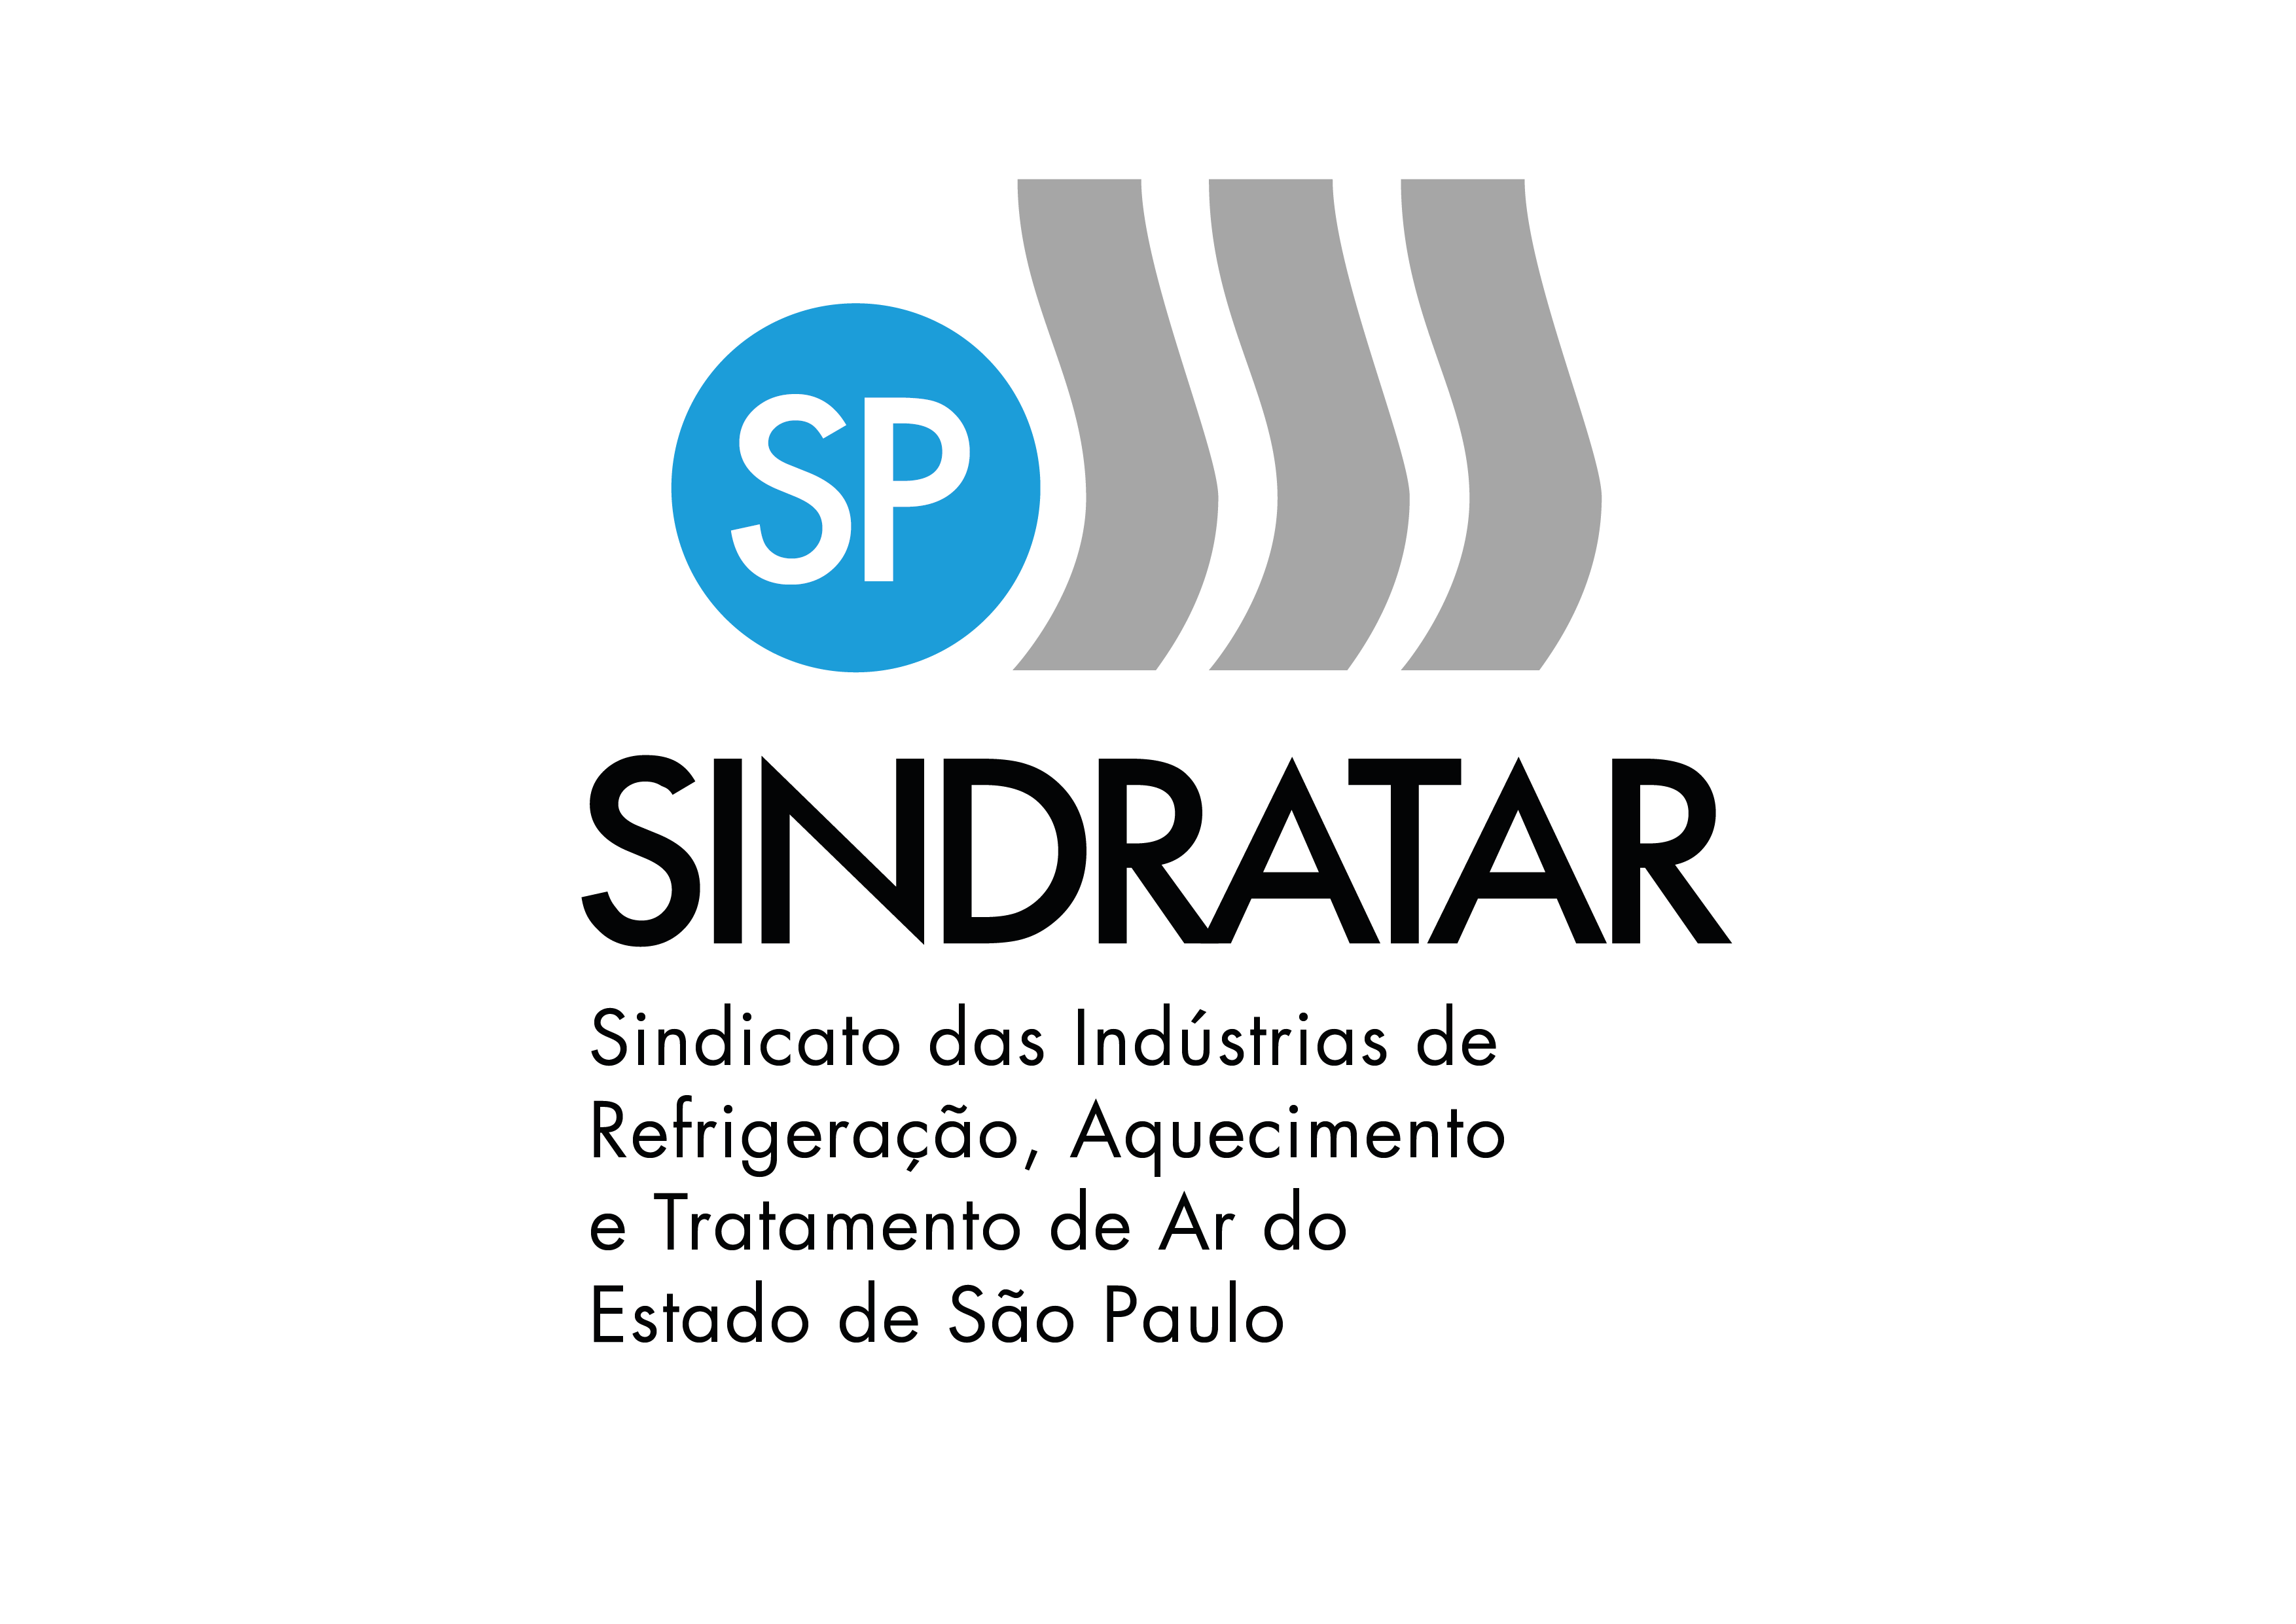 Sindratar SP – Sindicato da Indústria de Refrigeração, Aquecimento